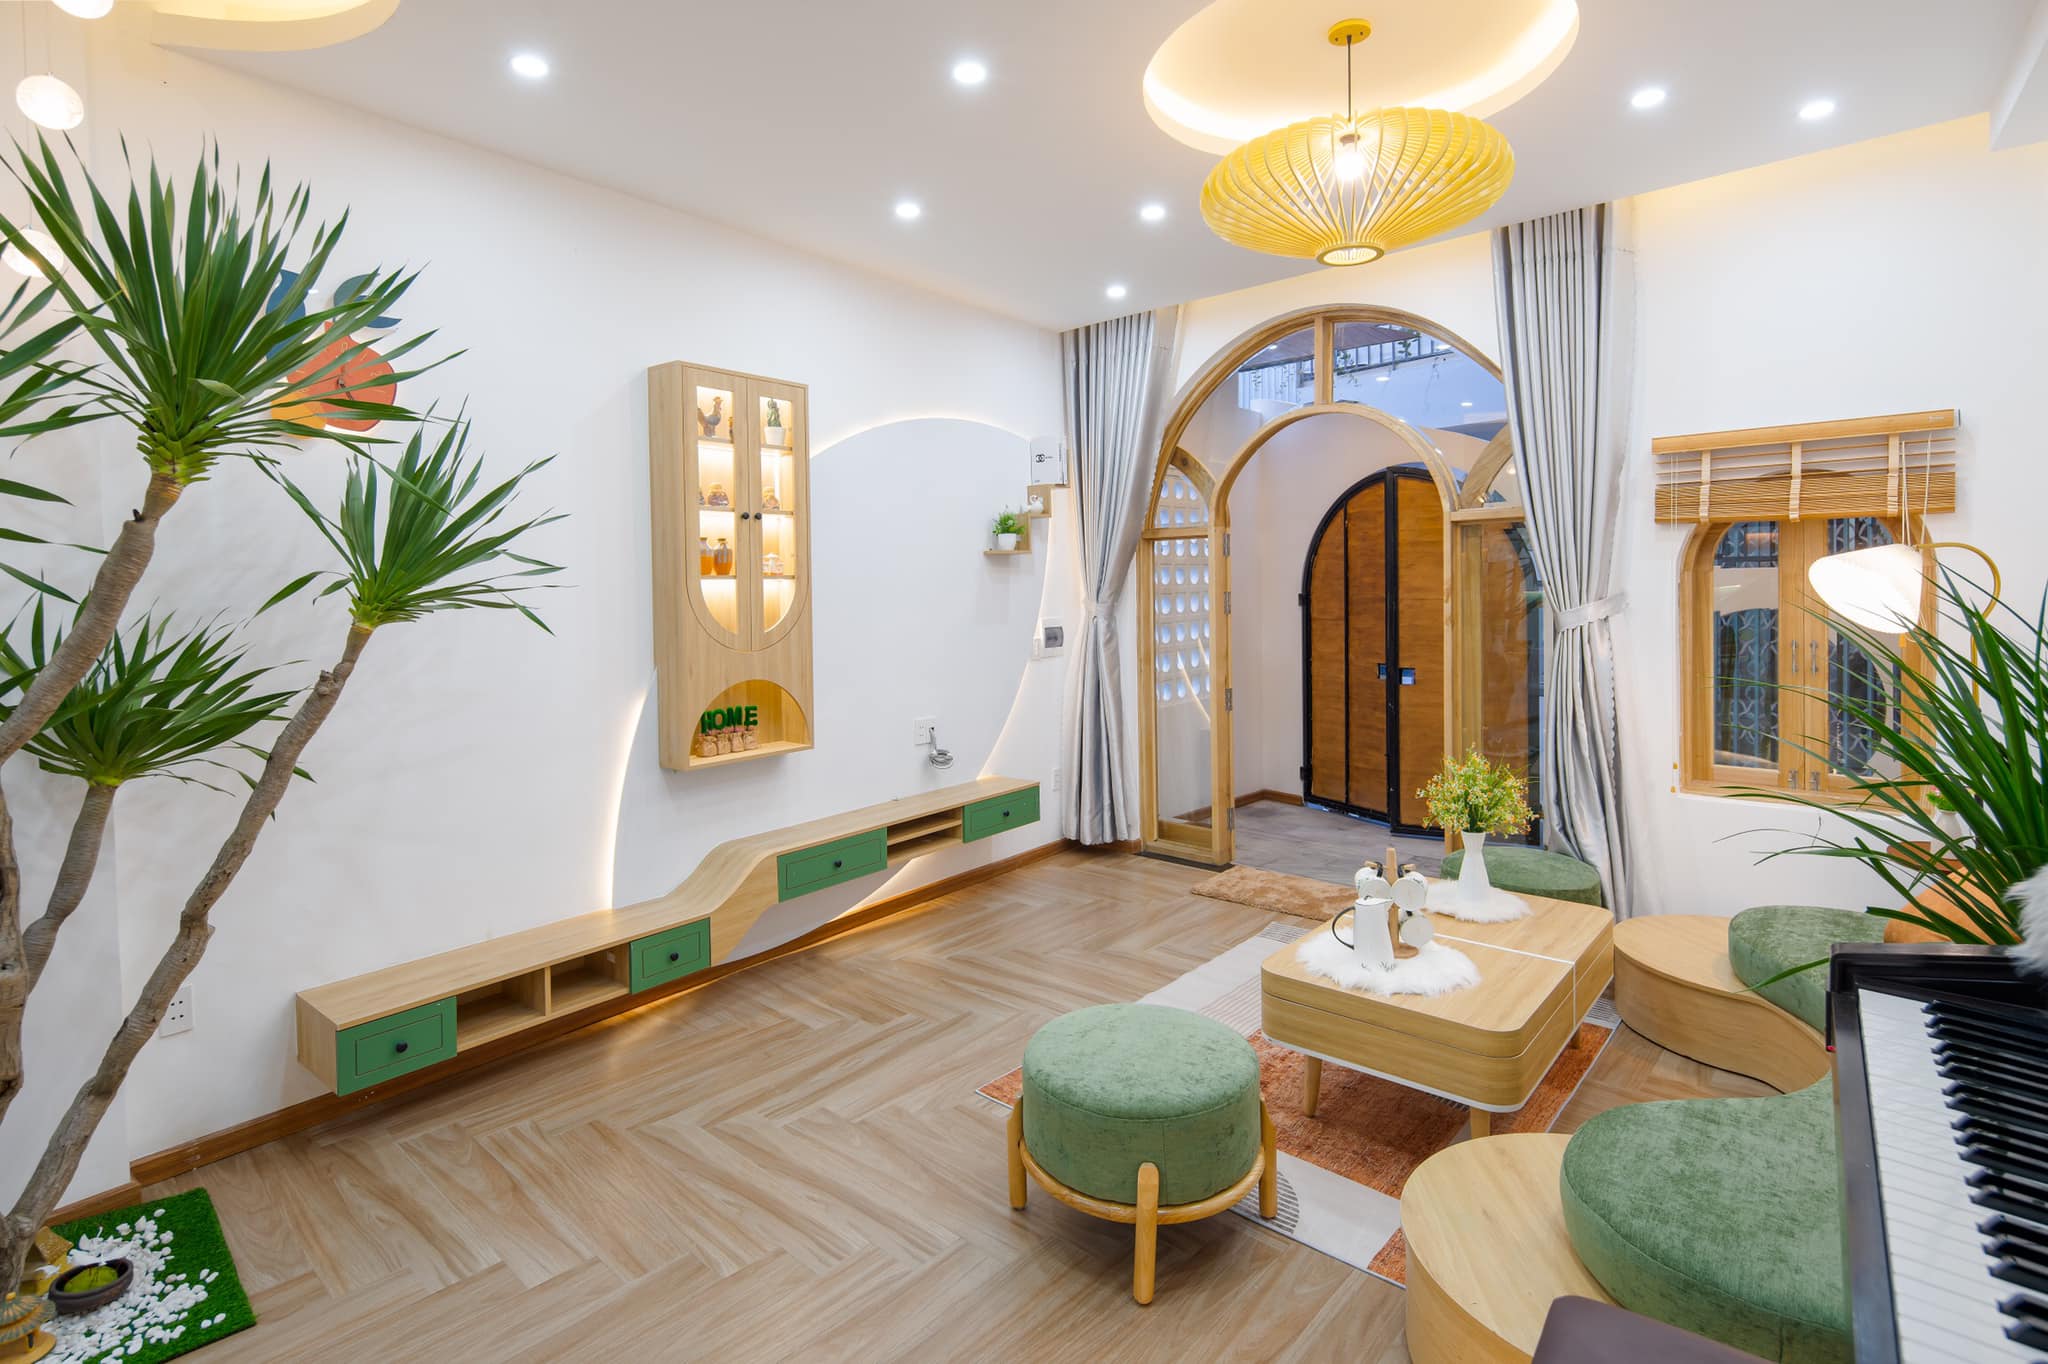 Tổng thể nội thất phòng khách được thiết kế với 2 màu xanh và gỗ chủ đạo tạo không gian hài hòa